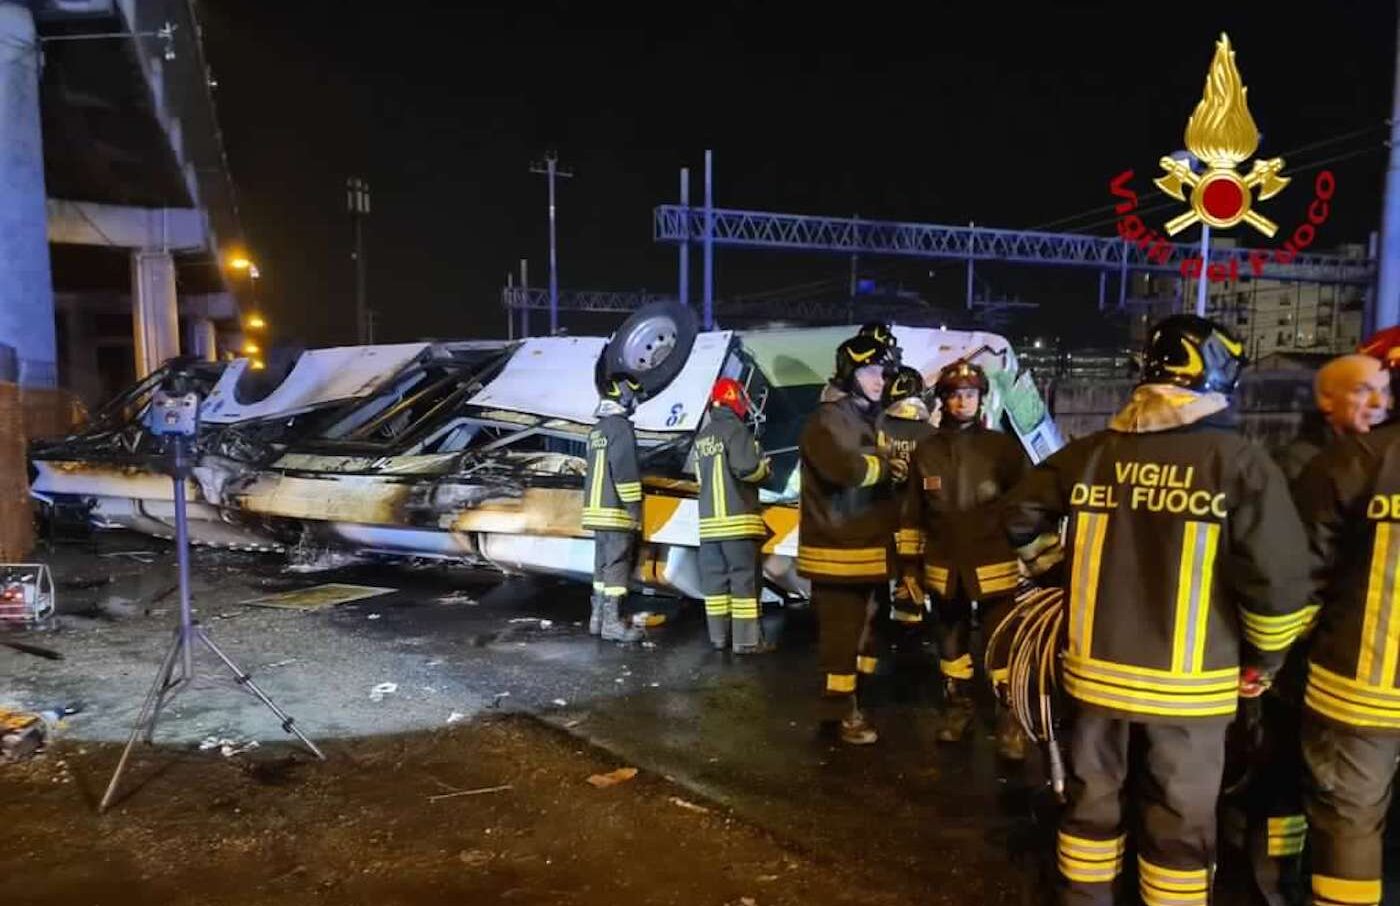 Bus precipitato a Mestre, il bilancio definitivo è di 21 morti e 15 feriti